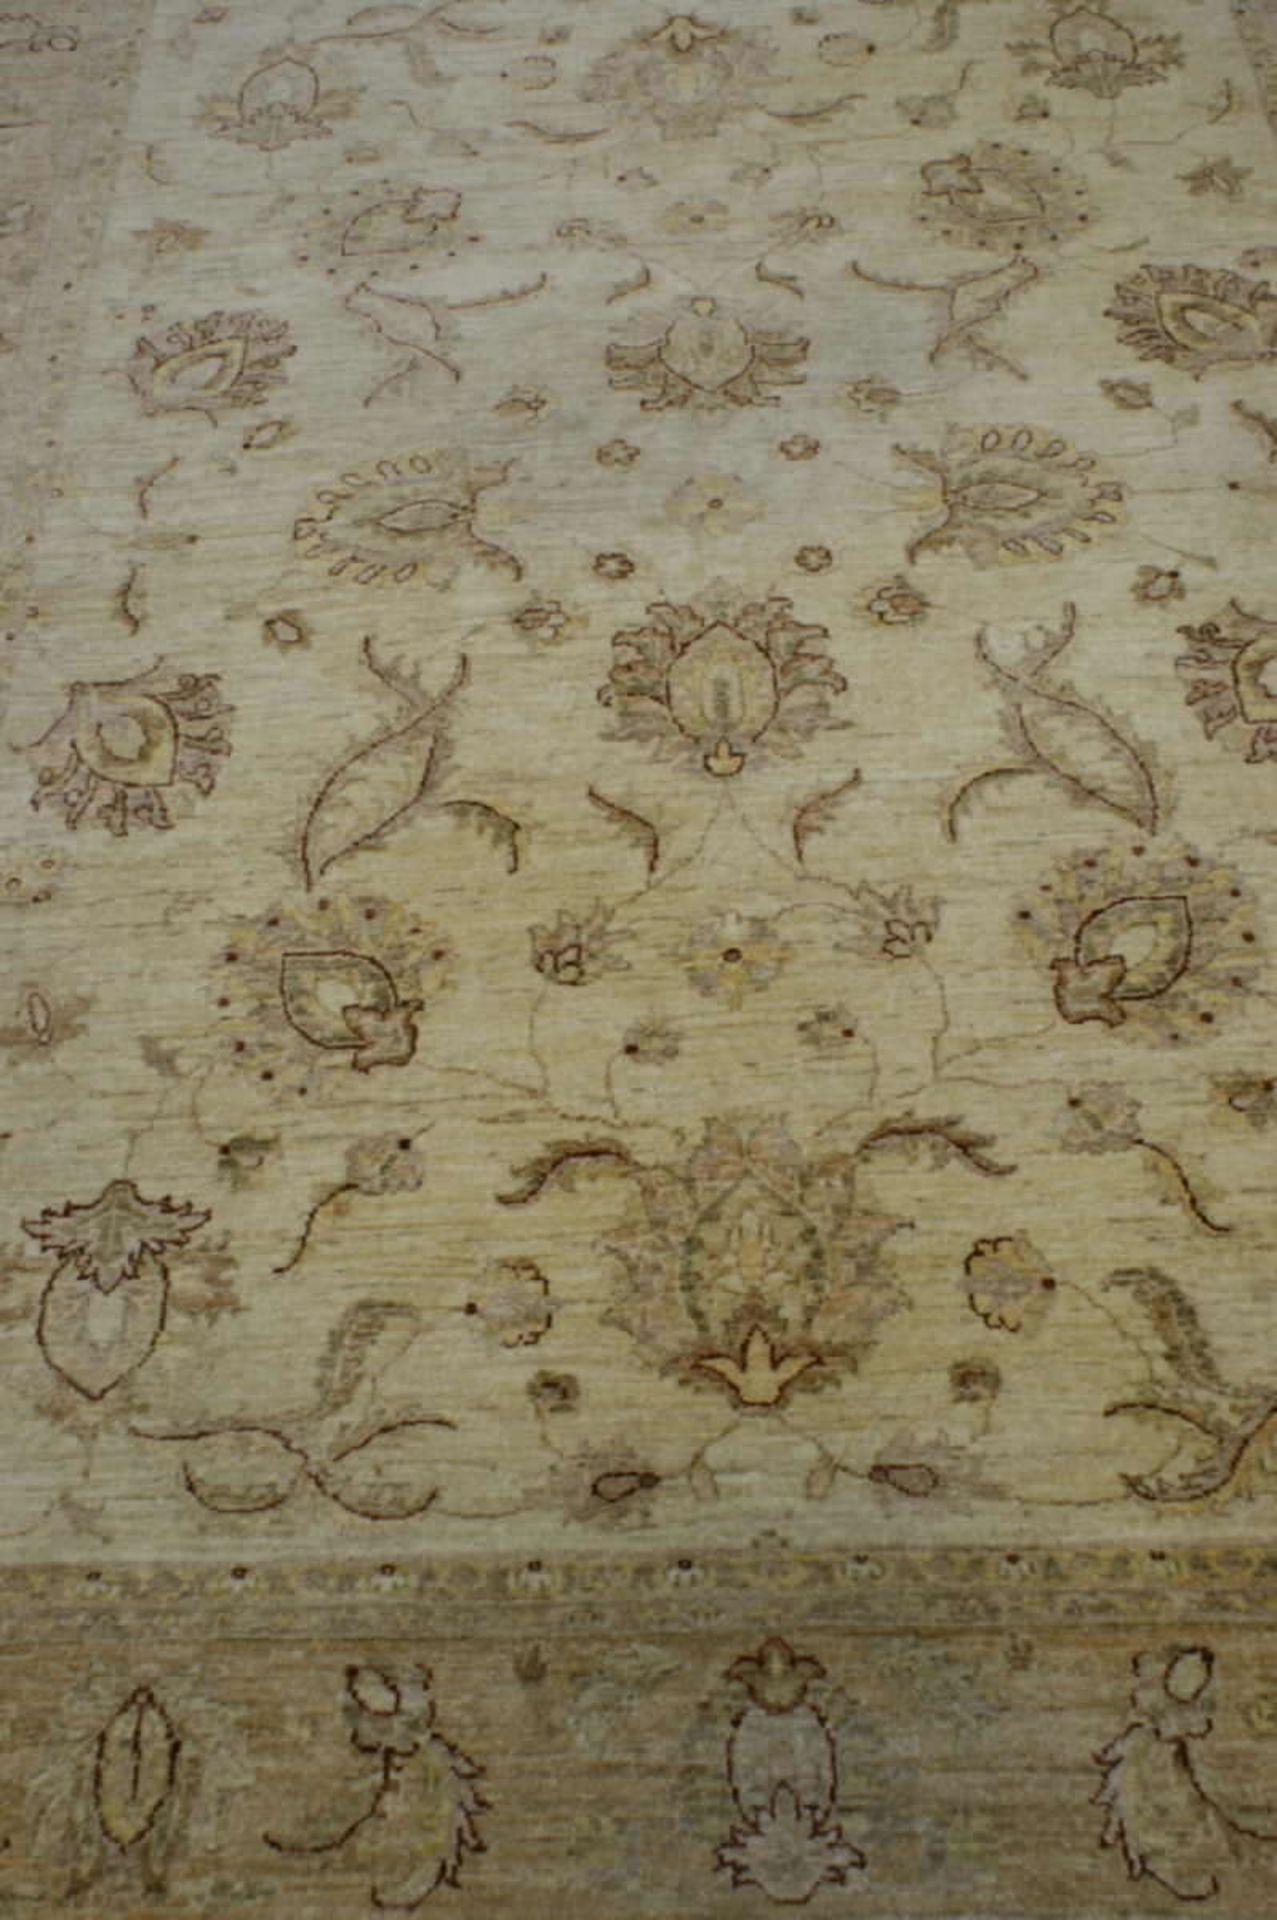 Großer Teppich in beige Tönen gehalten. Blumenmuster. Länge ca. 2,80m, Breite ca. 2,08m. mit - Bild 2 aus 3